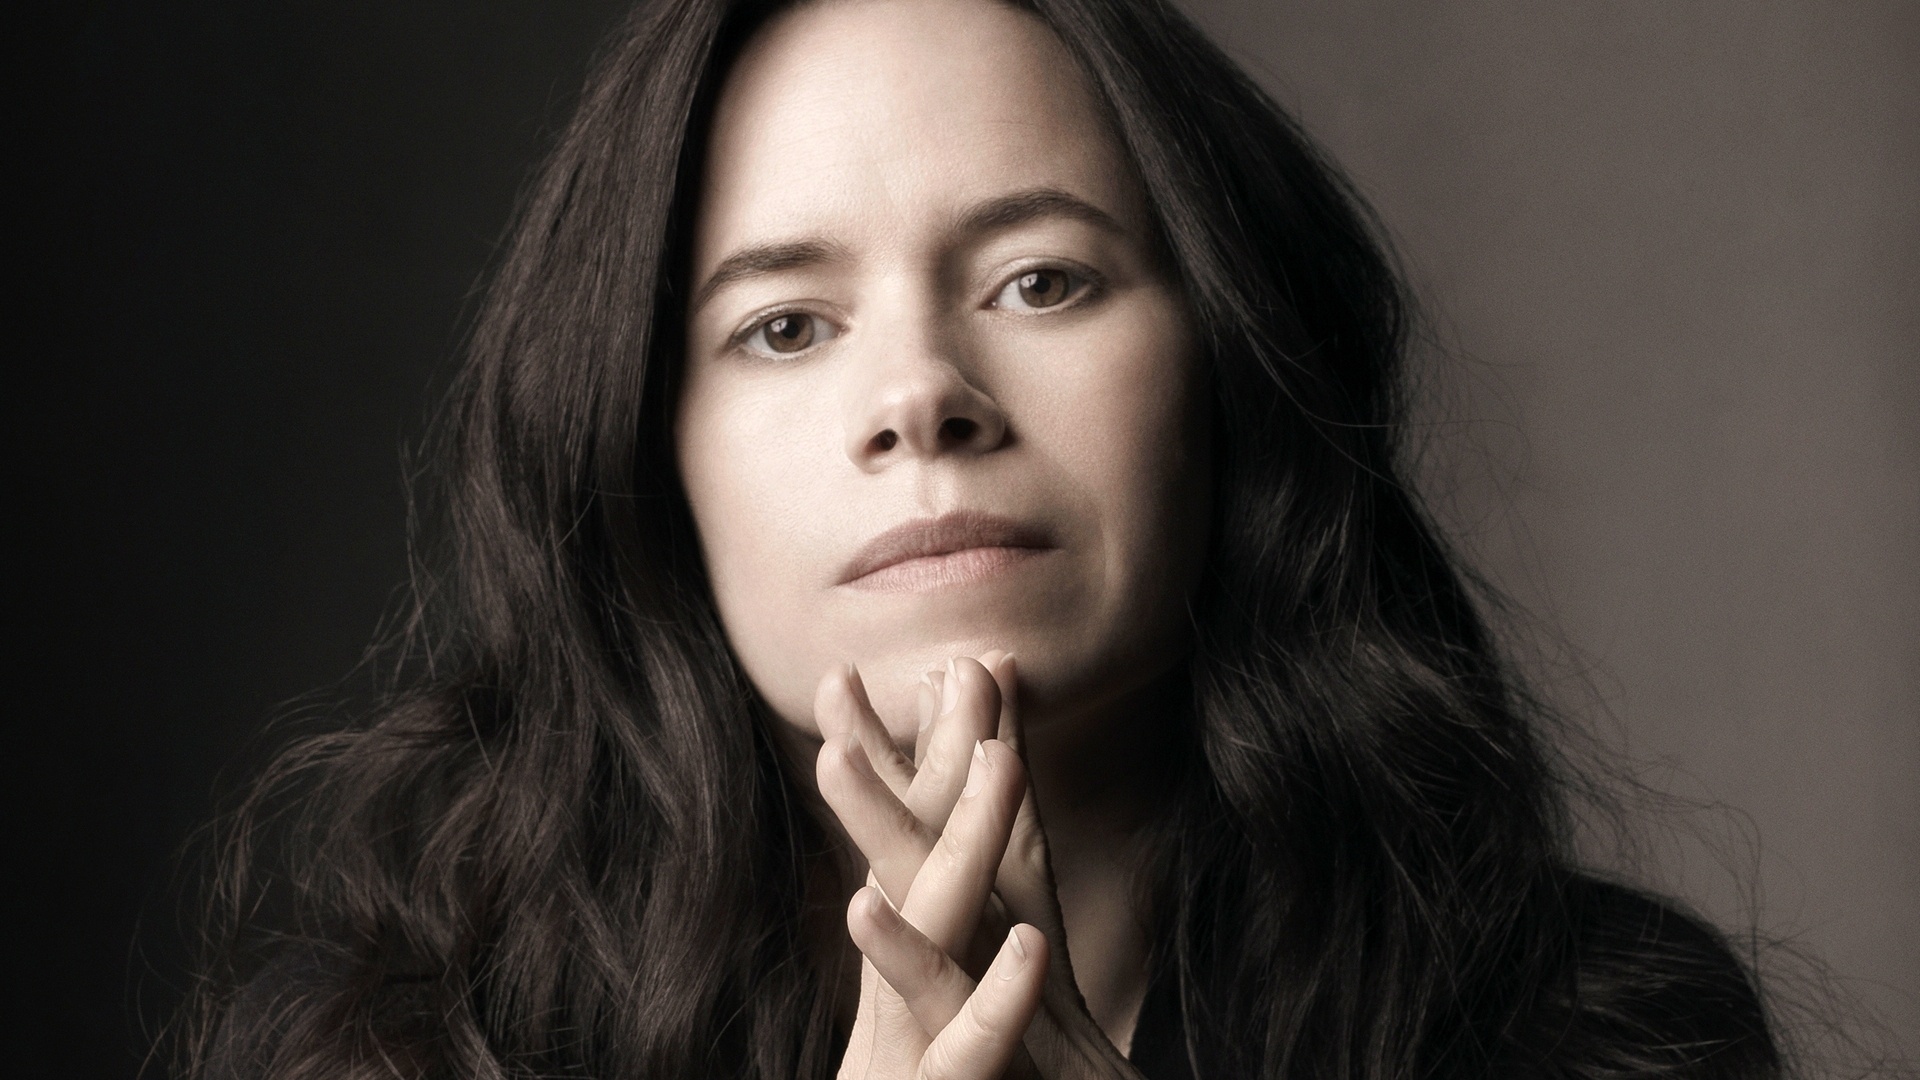 My Skin av Natalie Merchant